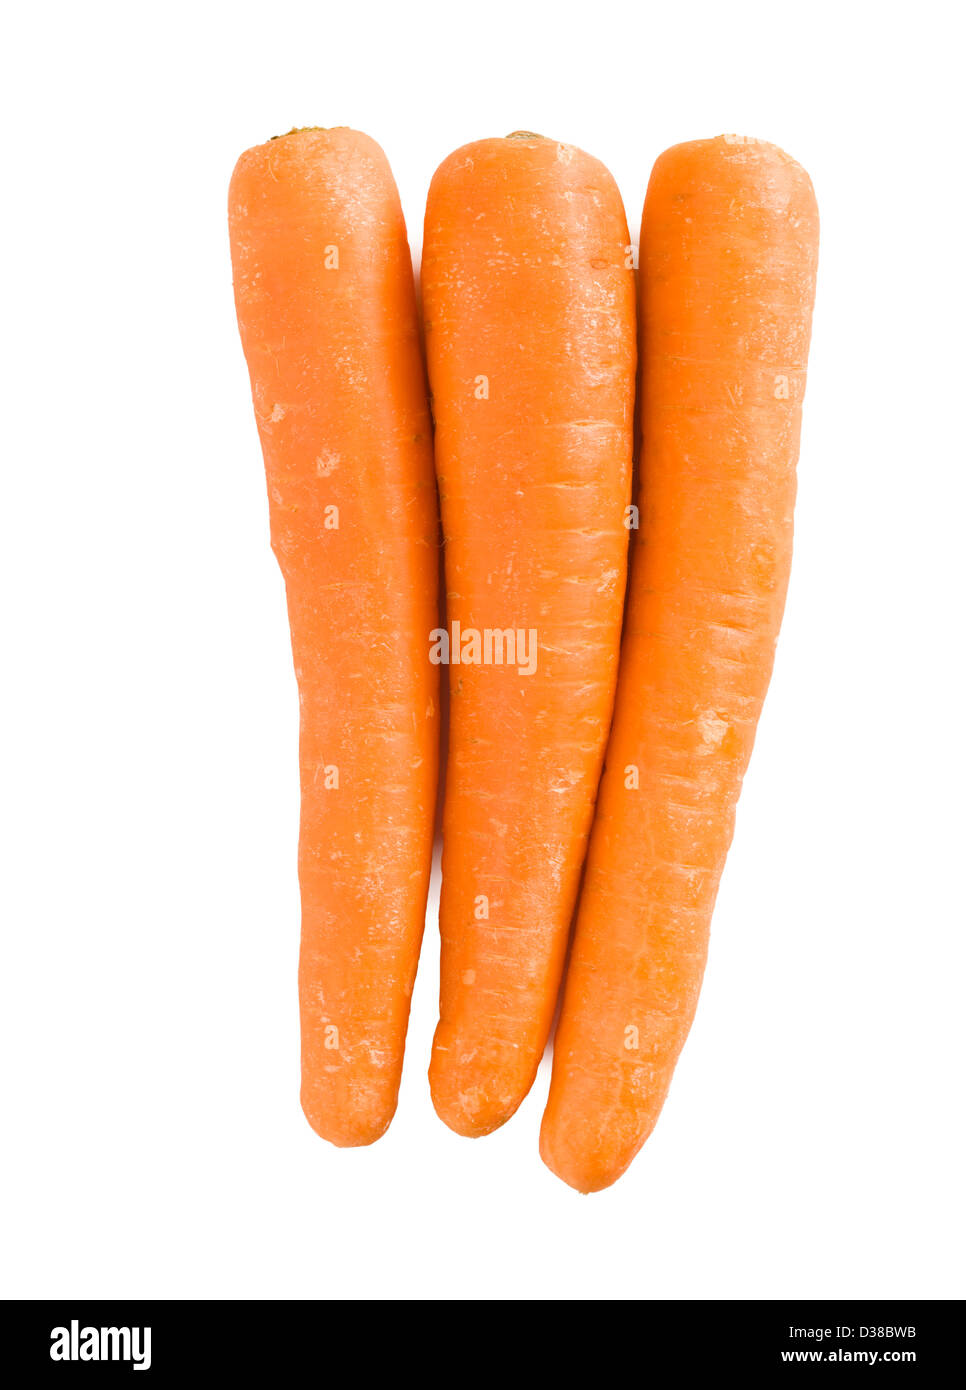 Carrots. Stock Photo